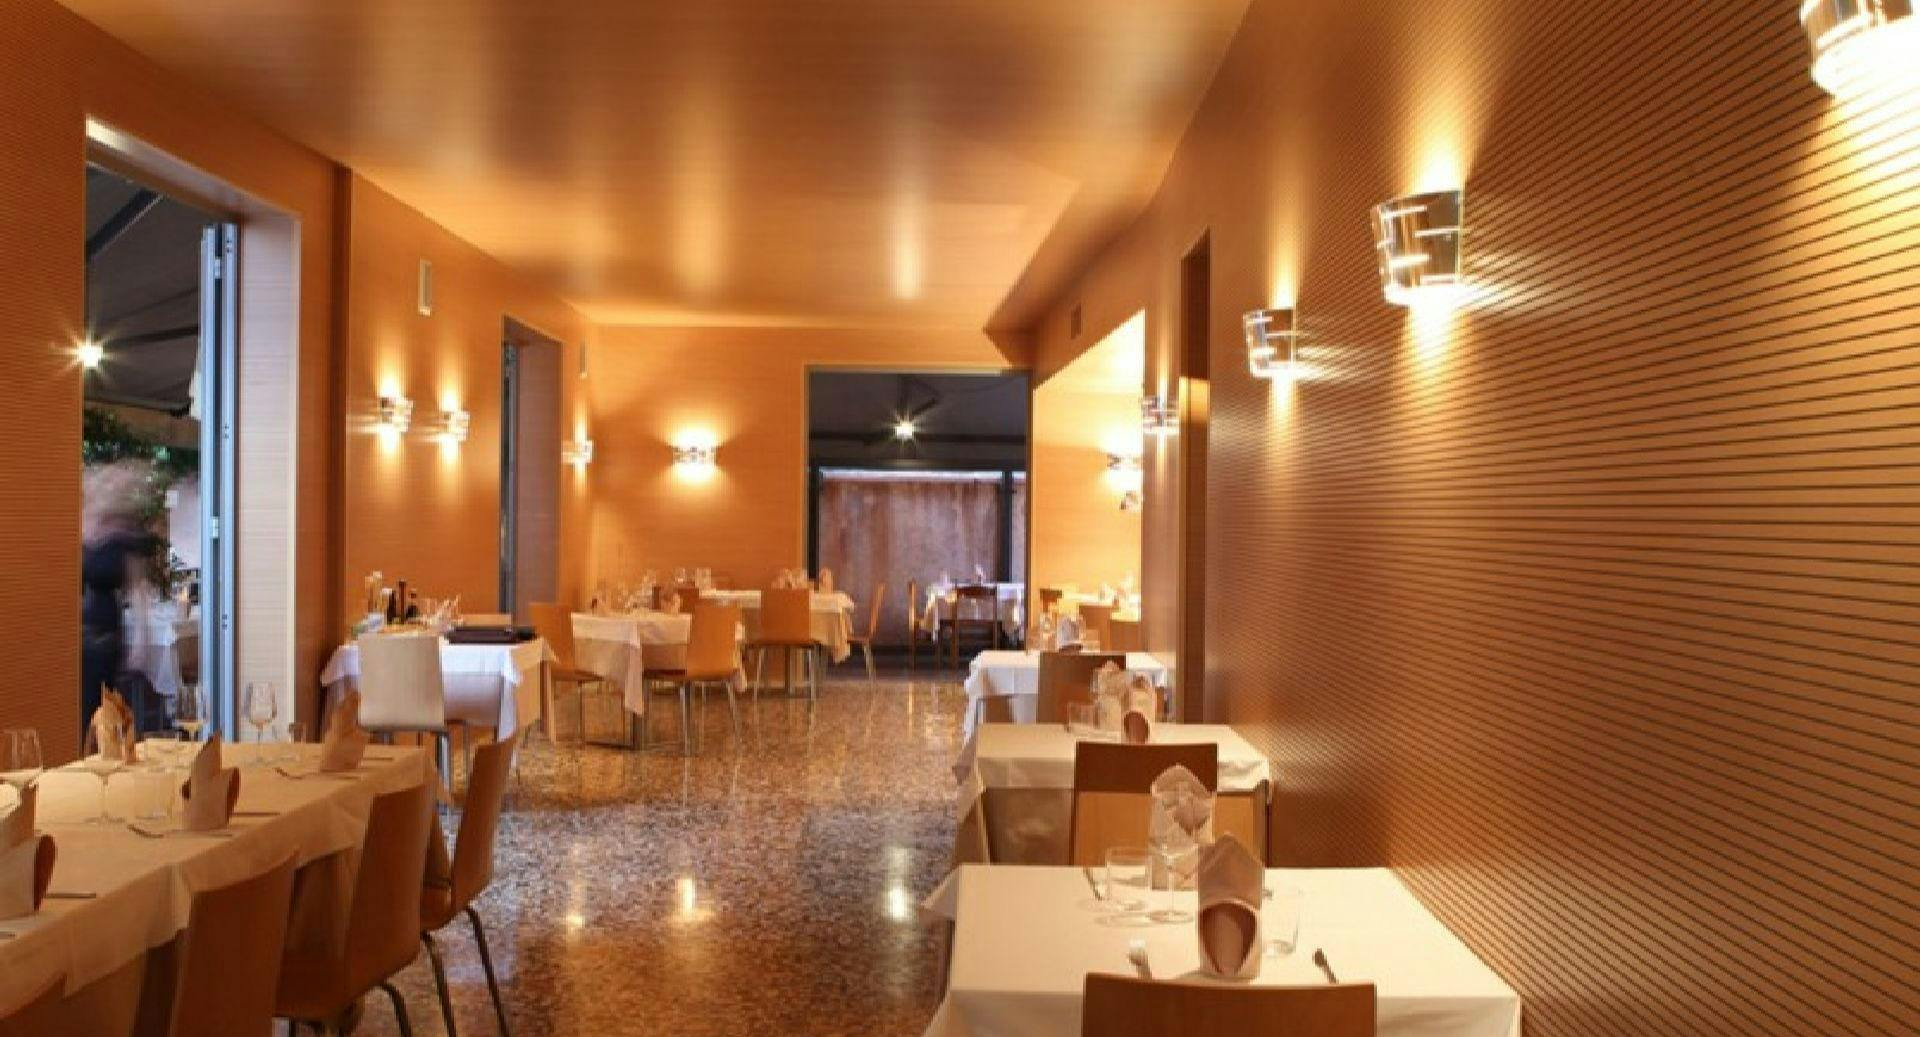 Photo of restaurant Trattoria Baccalà Divino in Gazzera, Venice